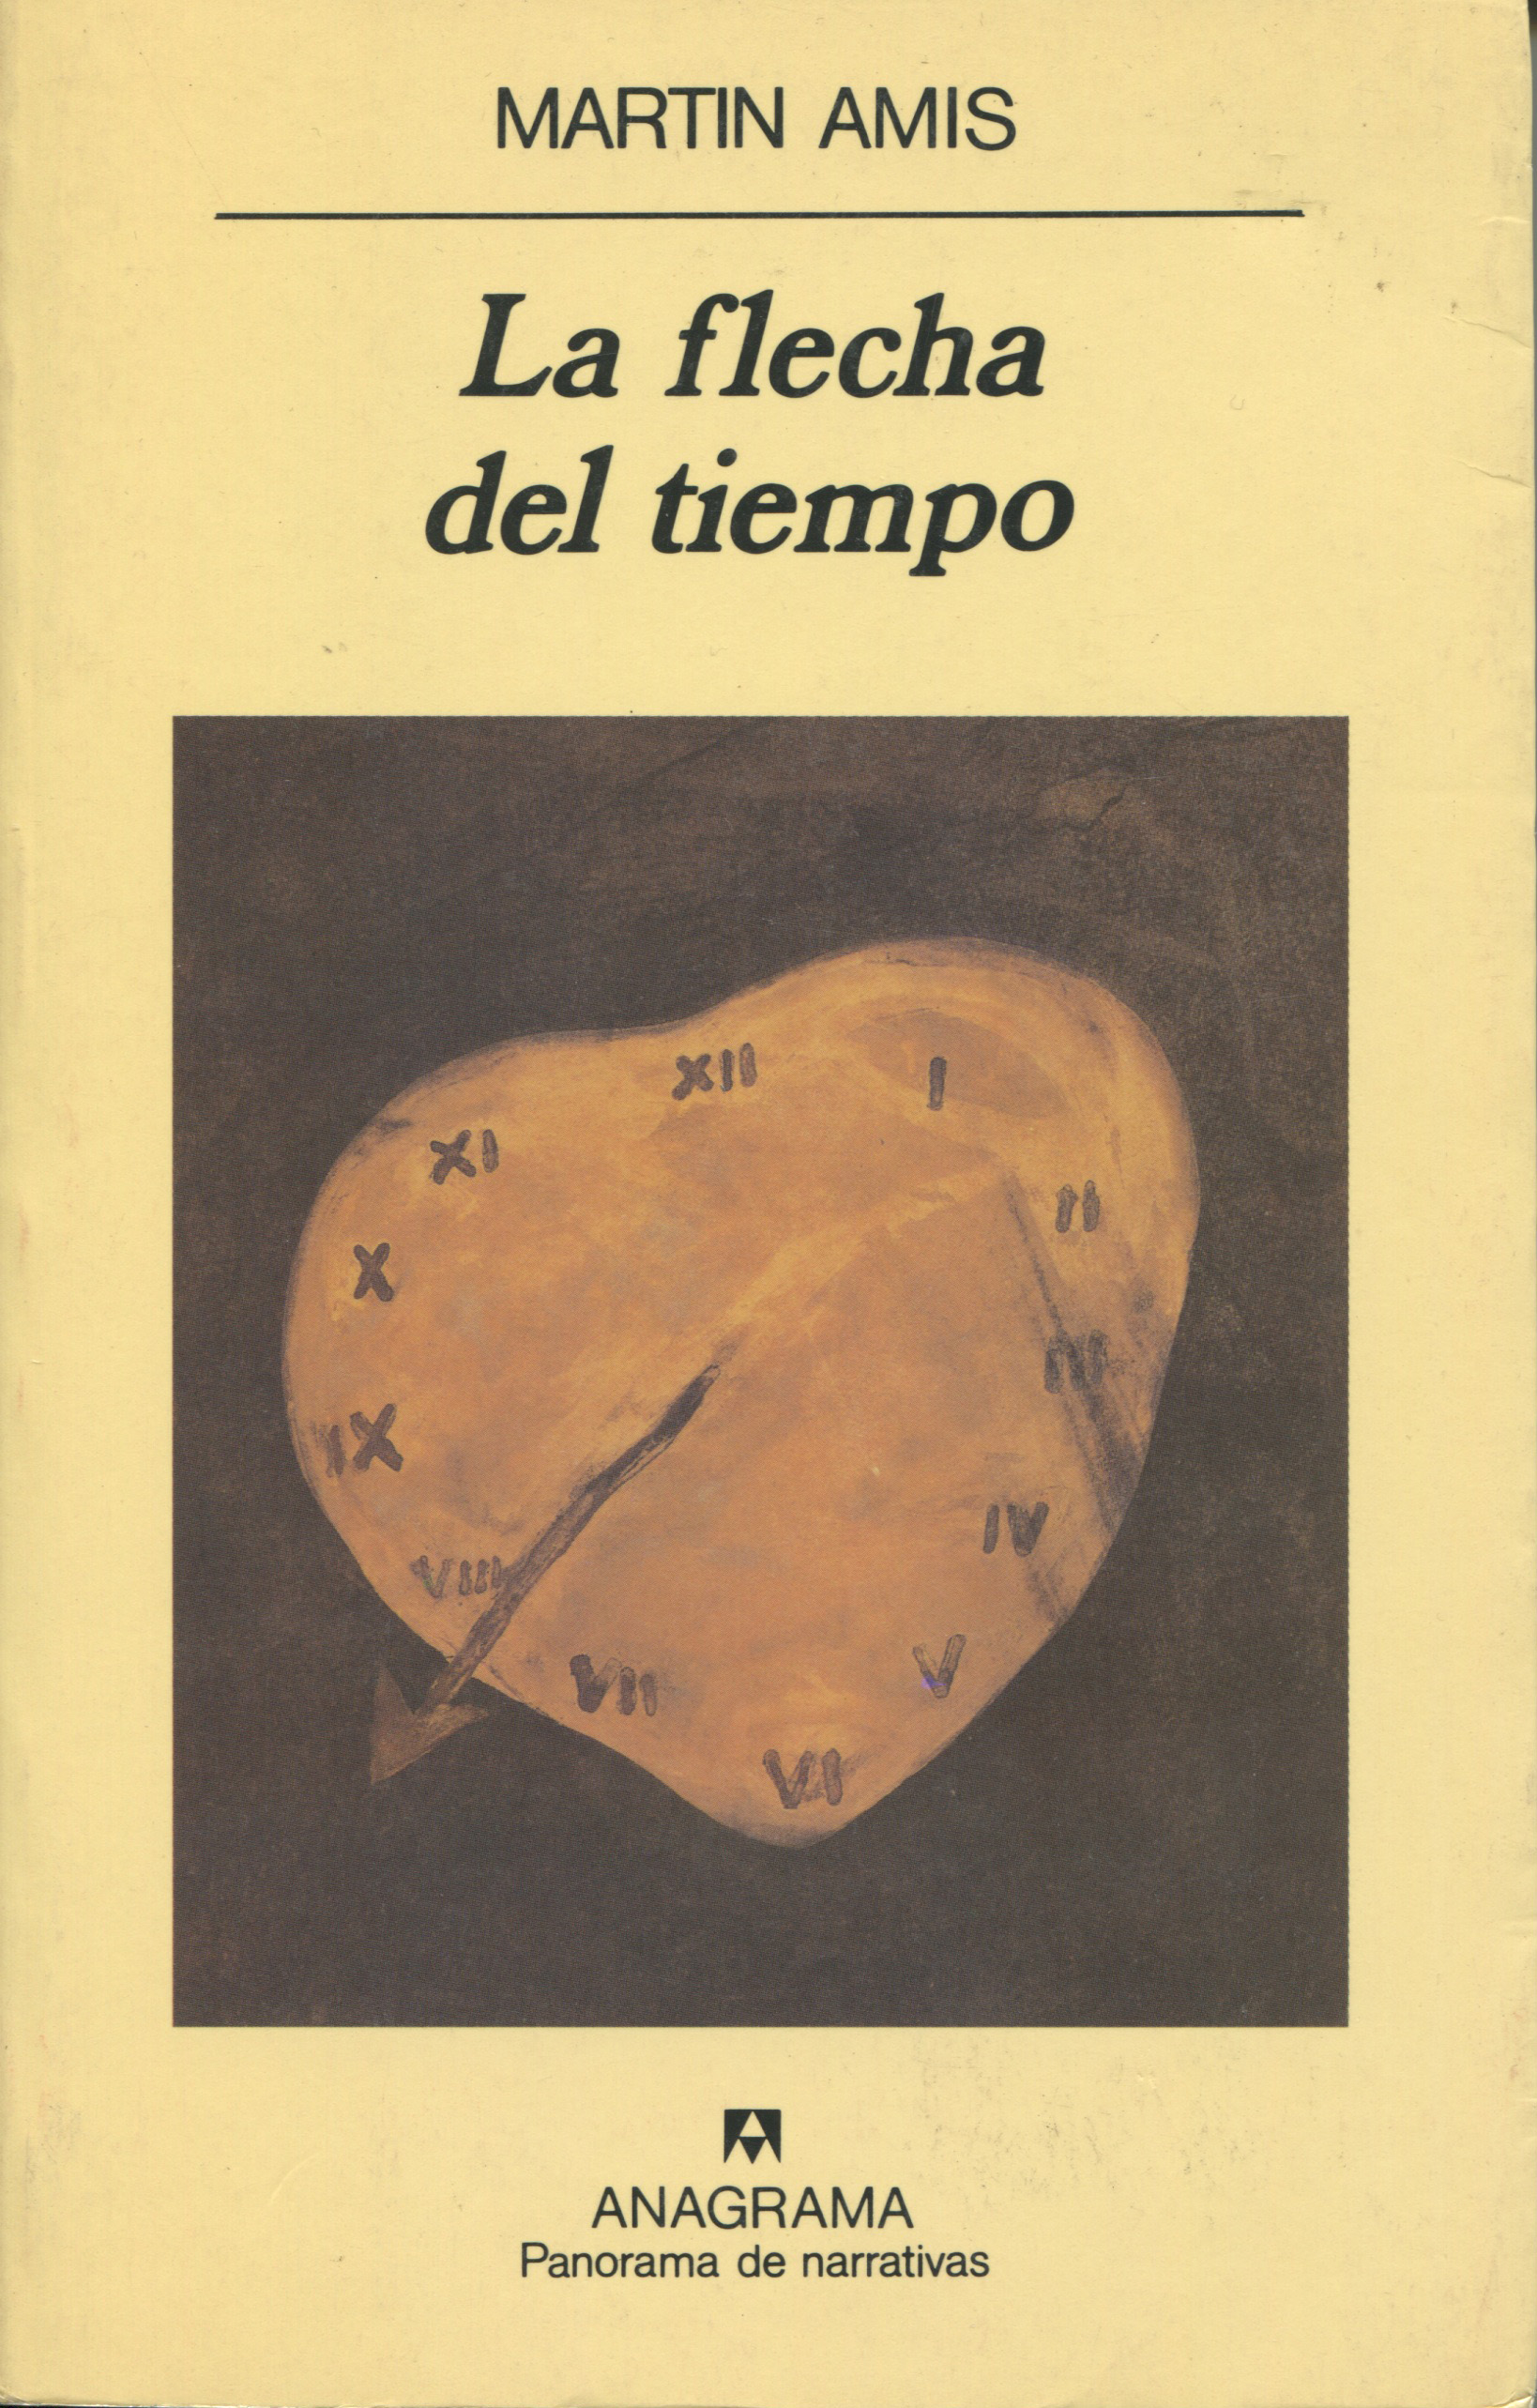 Envolver teatro Acurrucarse La flecha del tiempo - Amis, Martin - 978-84-339-1192-6 - Editorial Anagrama